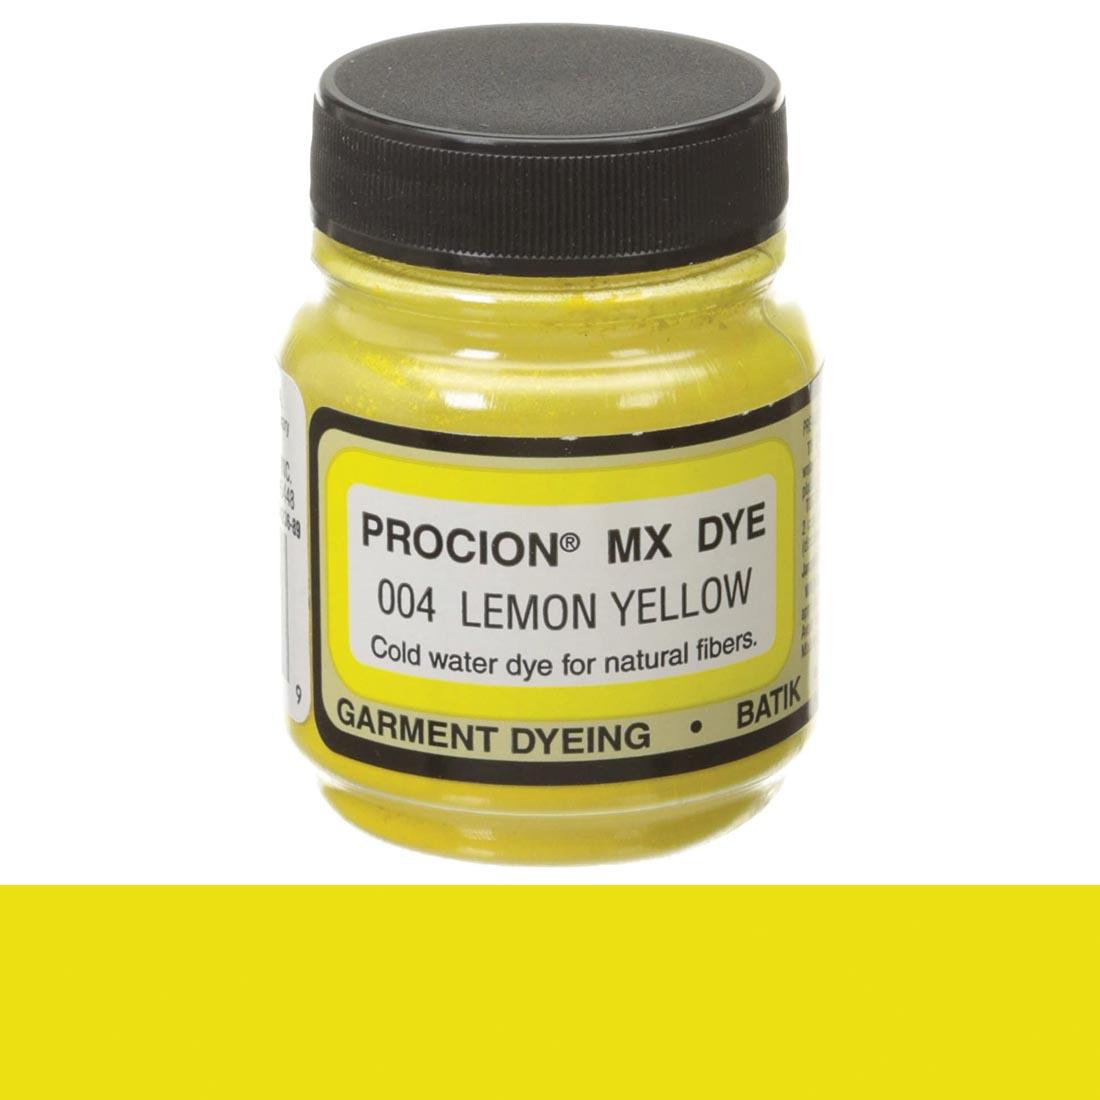 Jacquard Procion MX Dye Lemon Yellow